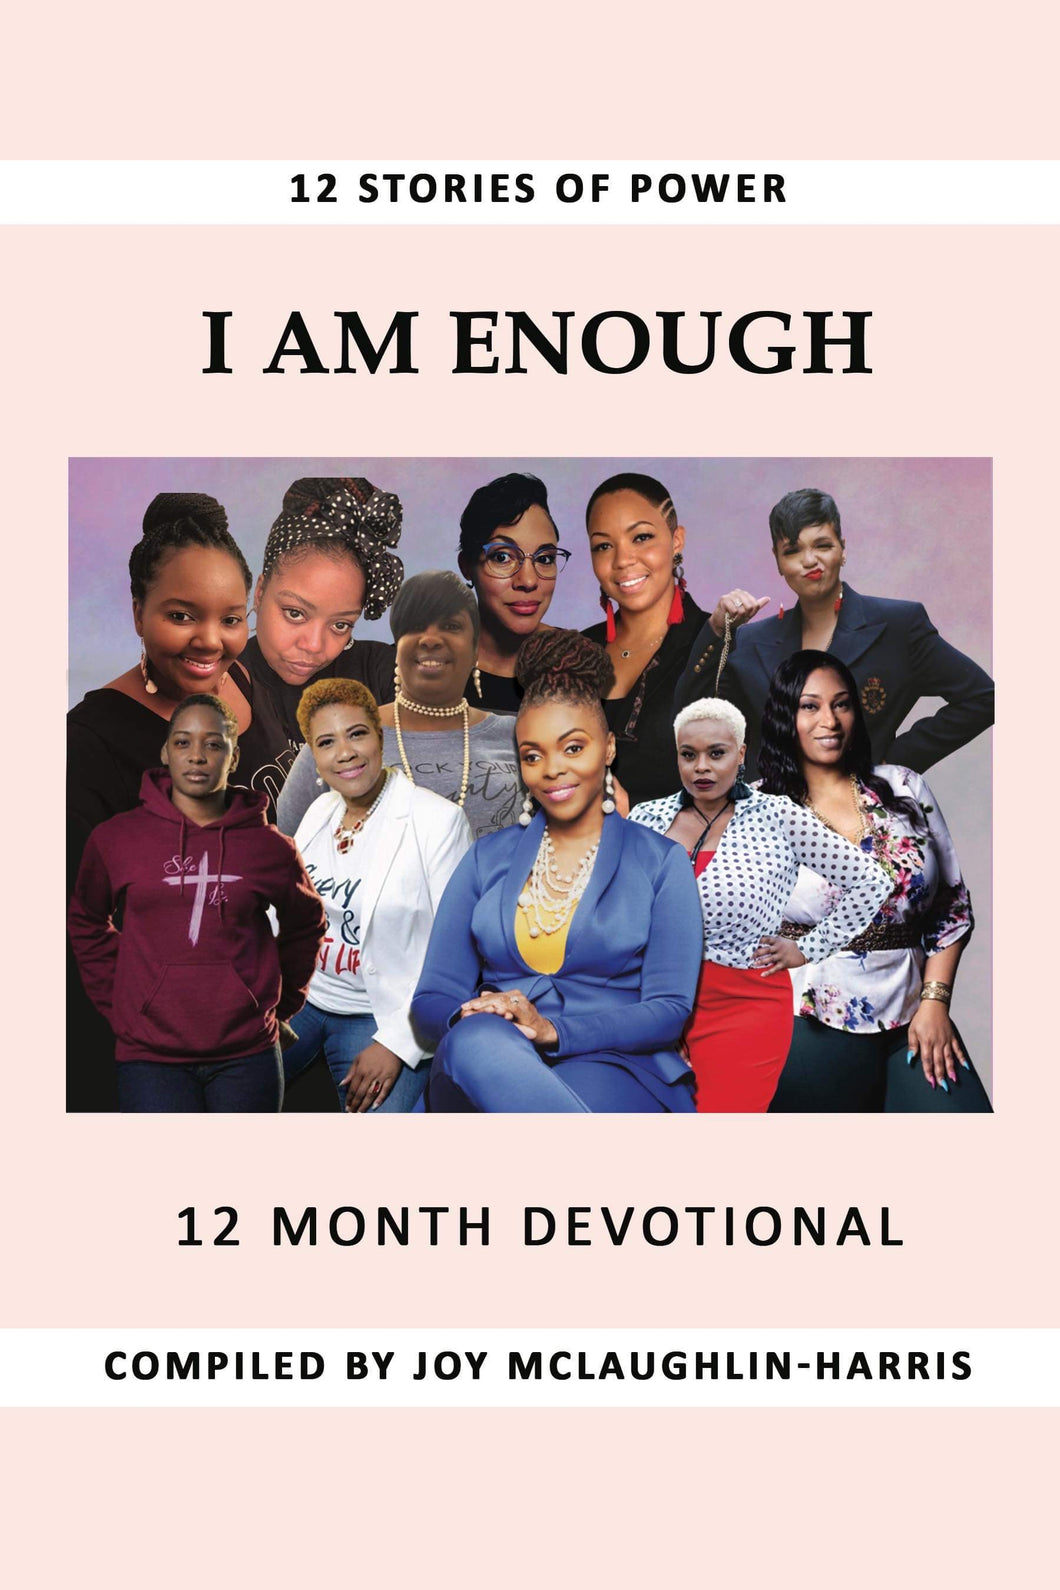 I AM ENOUGH- 12 Month Devotional